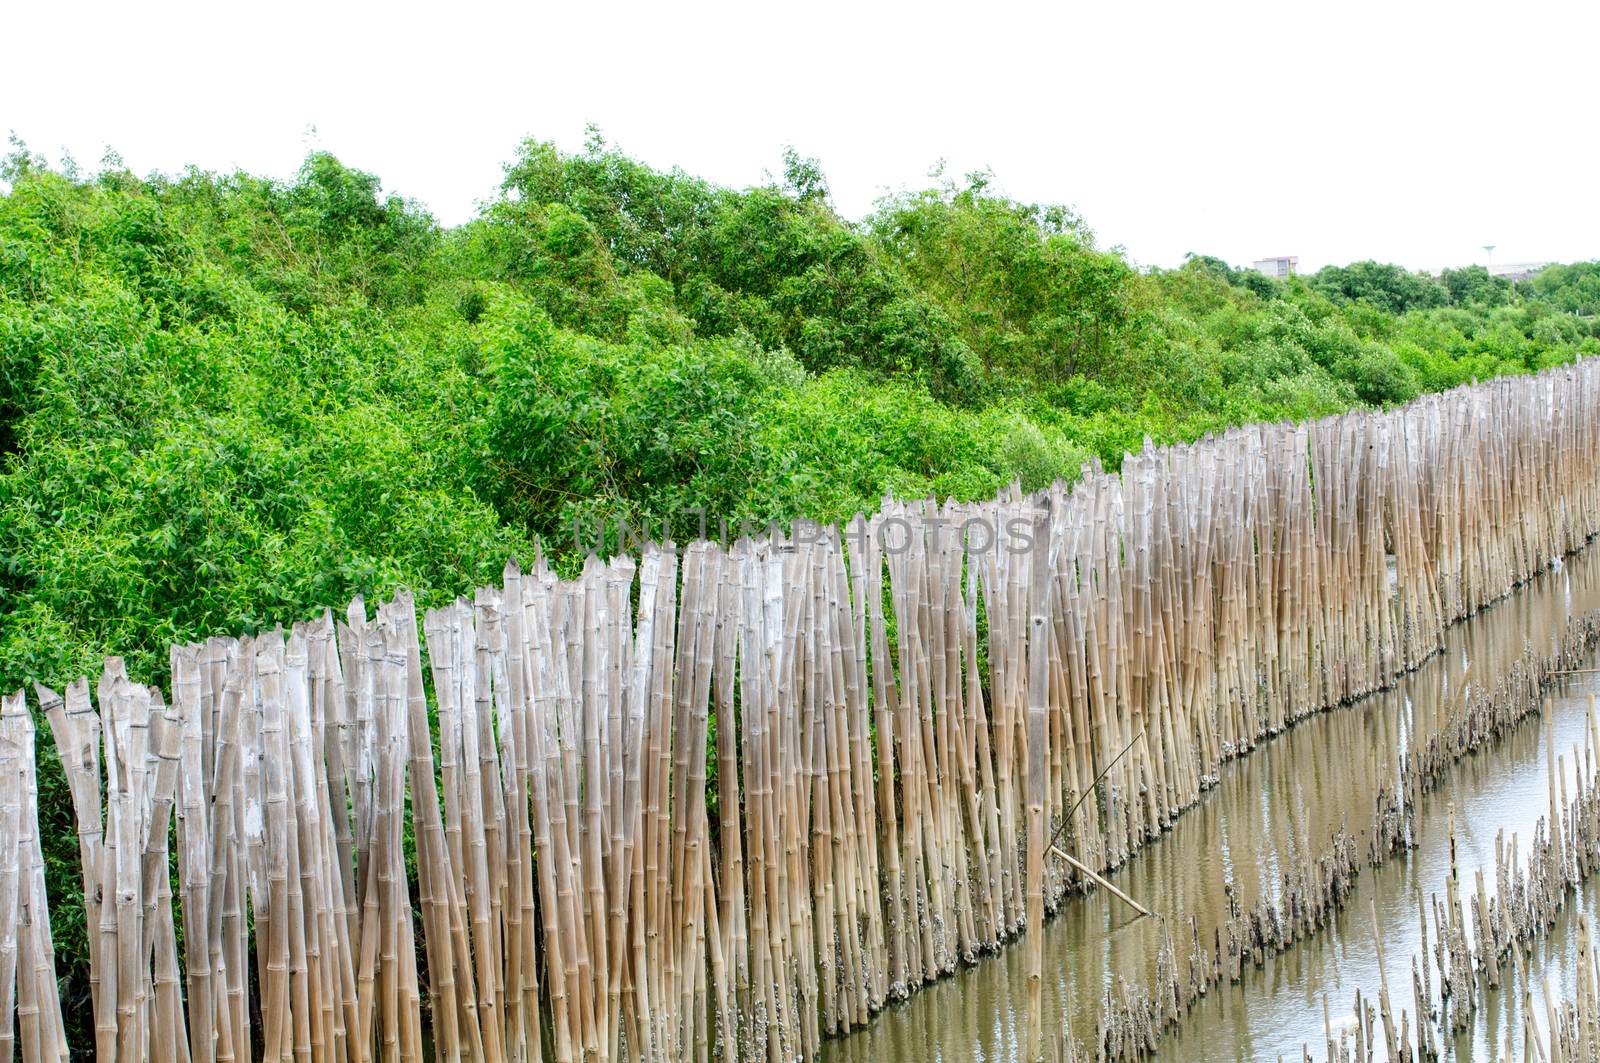 Bamboo fence surrounding wetlands